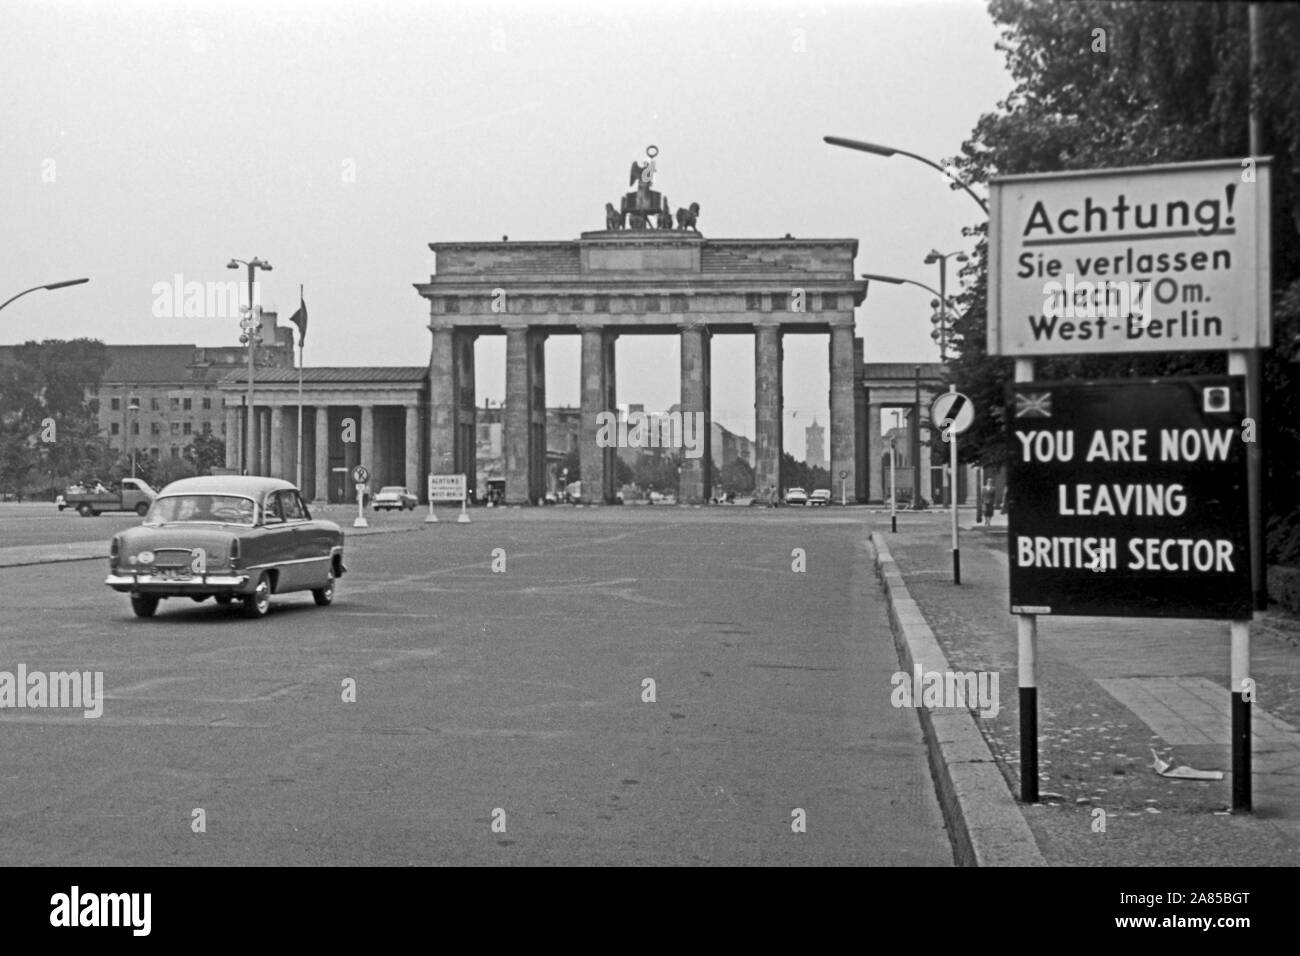 Das Brandenburger Tor in Berlin Zwei Wochen vor dem Mauerbau, Deutschland 1961. La porta di Brandeburgo a Berlino, due settimane prima che il muro è stato costruito, Germania 1961. Foto Stock